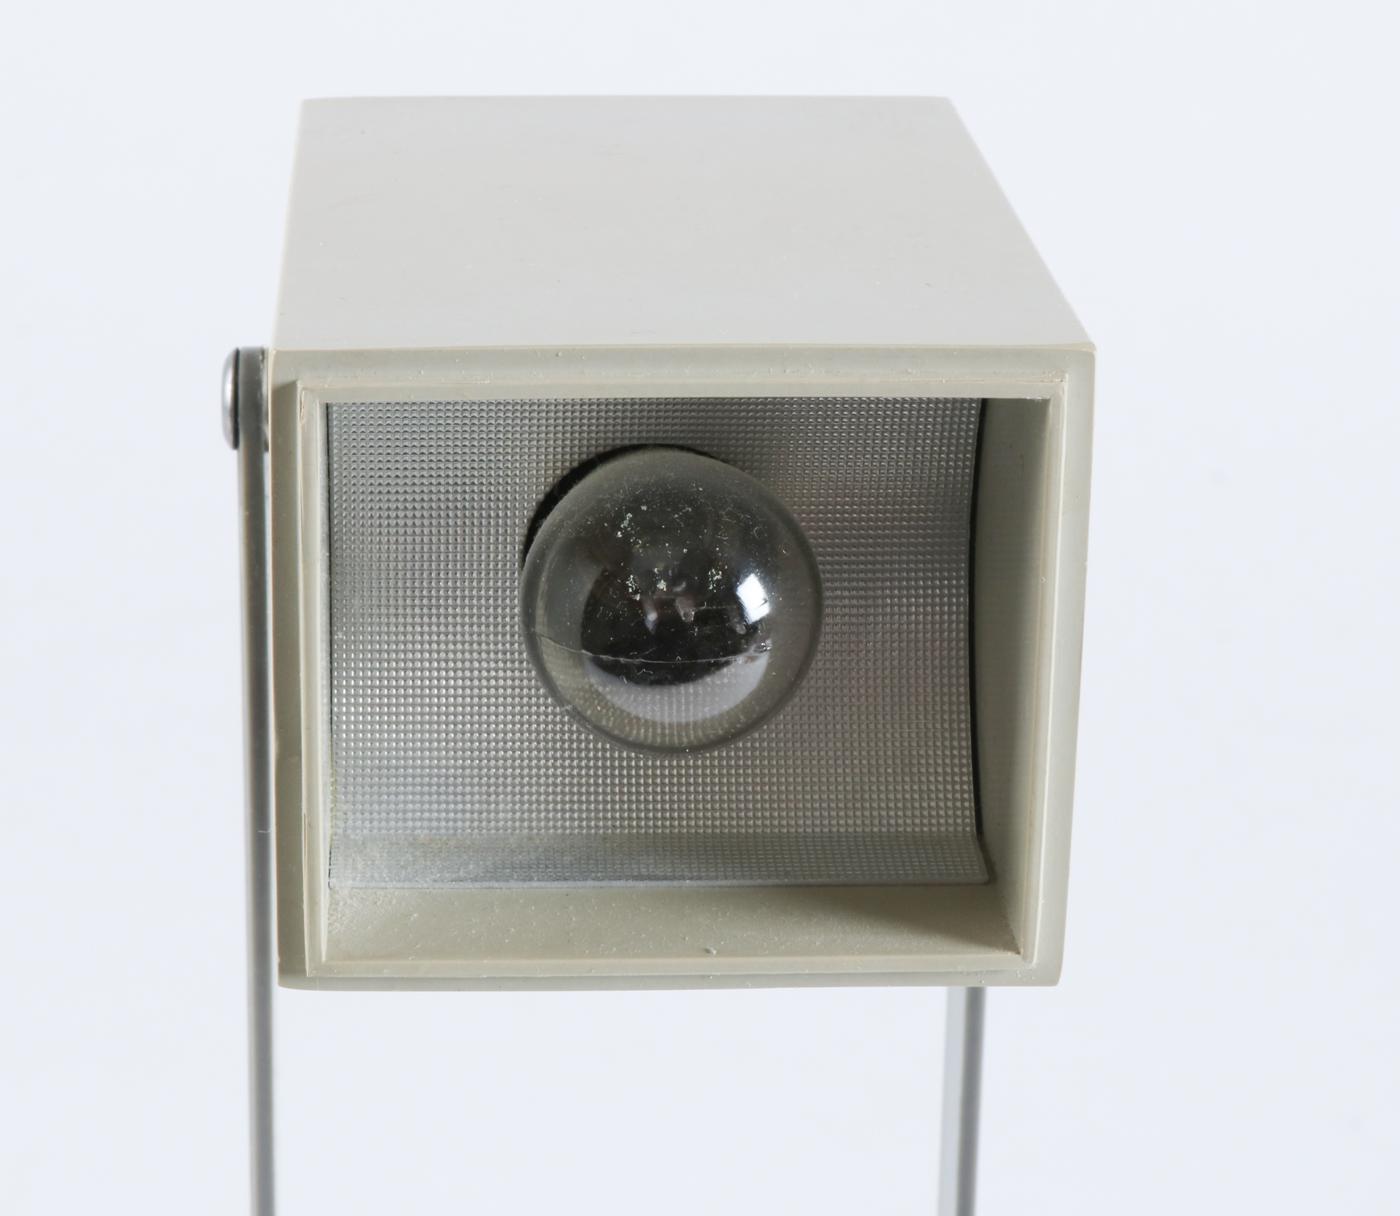 Seltene Lampetit-Lampe, entworfen von Verner Panton für Louis Poulsen im Jahr 1966. Eine kleine kompakte Lampe mit rechteckigen Formen, die ihrer Zeit voraus war. Diese Leuchte wird oft dem Designteam von Louis Poulsen zugeschrieben, aber nach dem